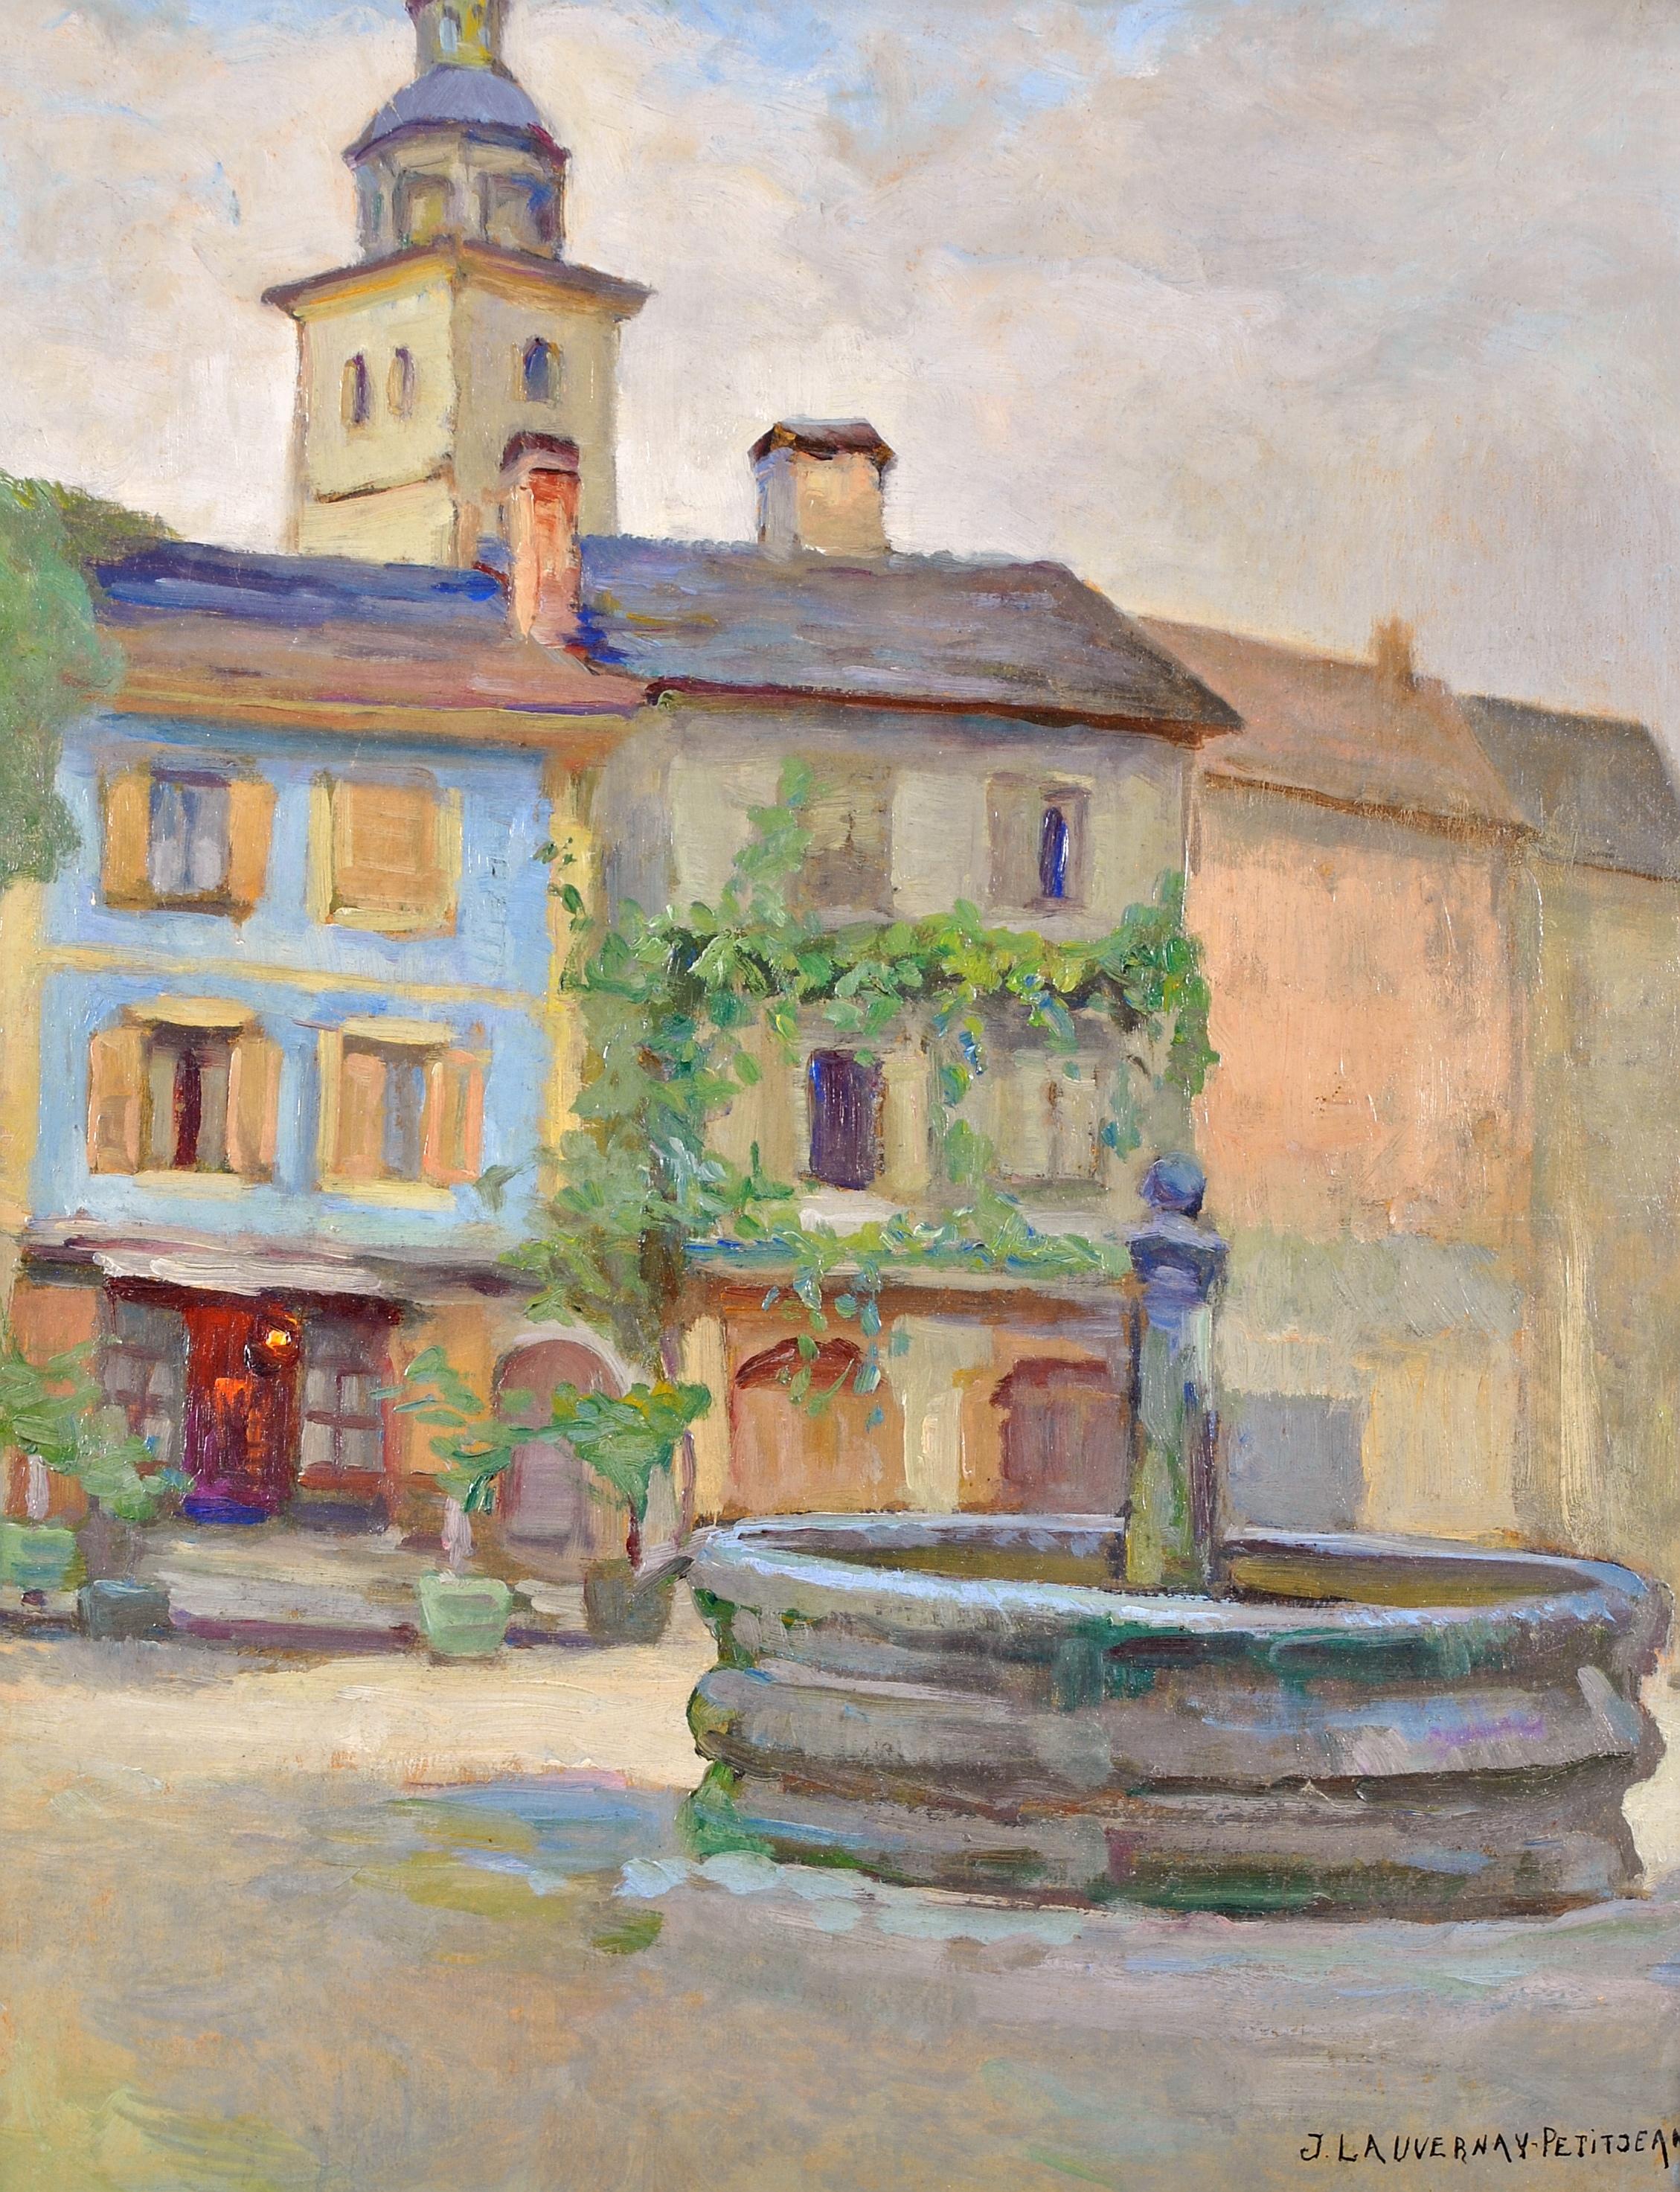 Le Puits - Paysage impressionniste français du 20e siècle - Painting de Jeanne Lauvernay-Pettitjean